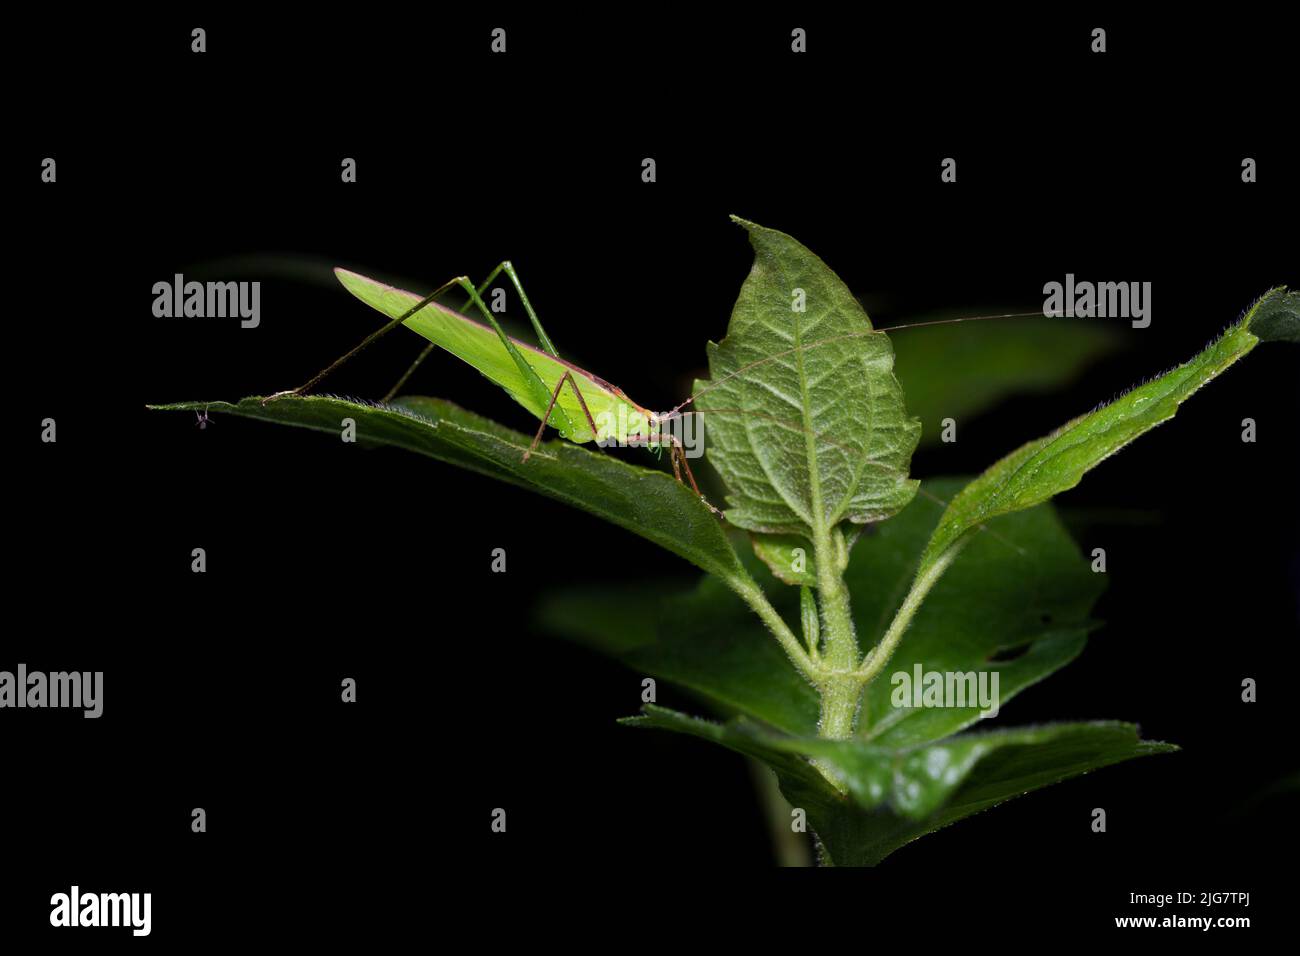 Hexacentrus est le genre type de grillons de brousse de la sous-famille Hexacentrinae. Assis sur une feuille avec de l'eau de pluie sur son corps et ses feuilles. Banque D'Images